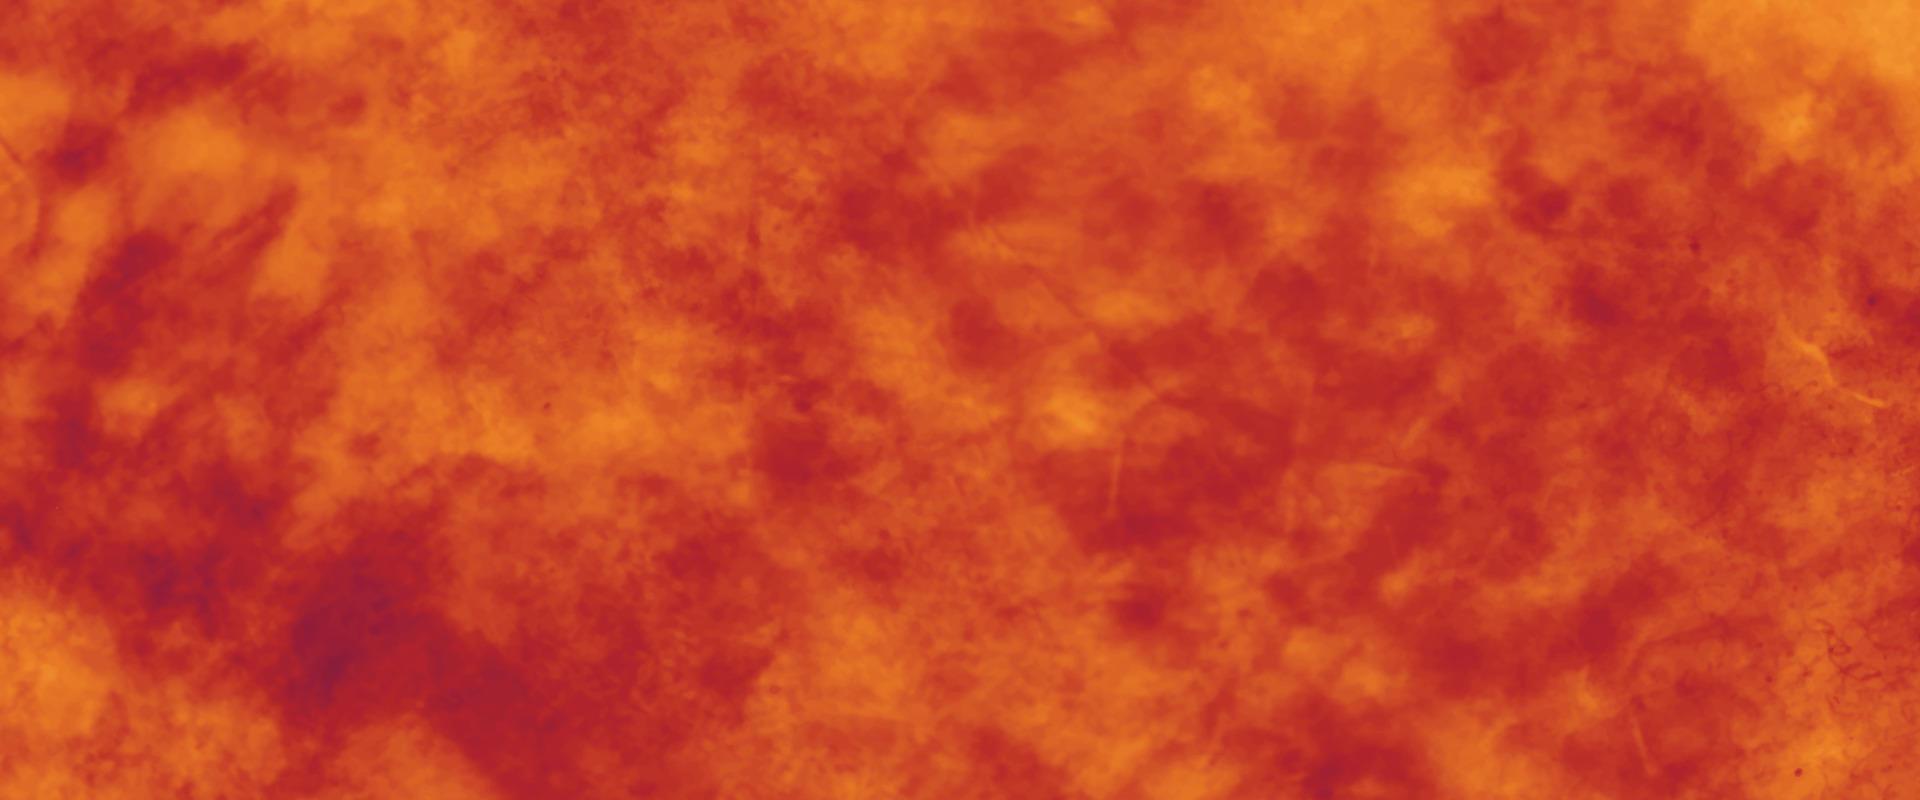 couleur de craie jaune orange rouge sur fond de papier vintage peinture dans des couleurs douces sur la vieille conception de texture de papier froissé, peinture aquarelle abstraite élégante. texture de papier magenta. vecteur